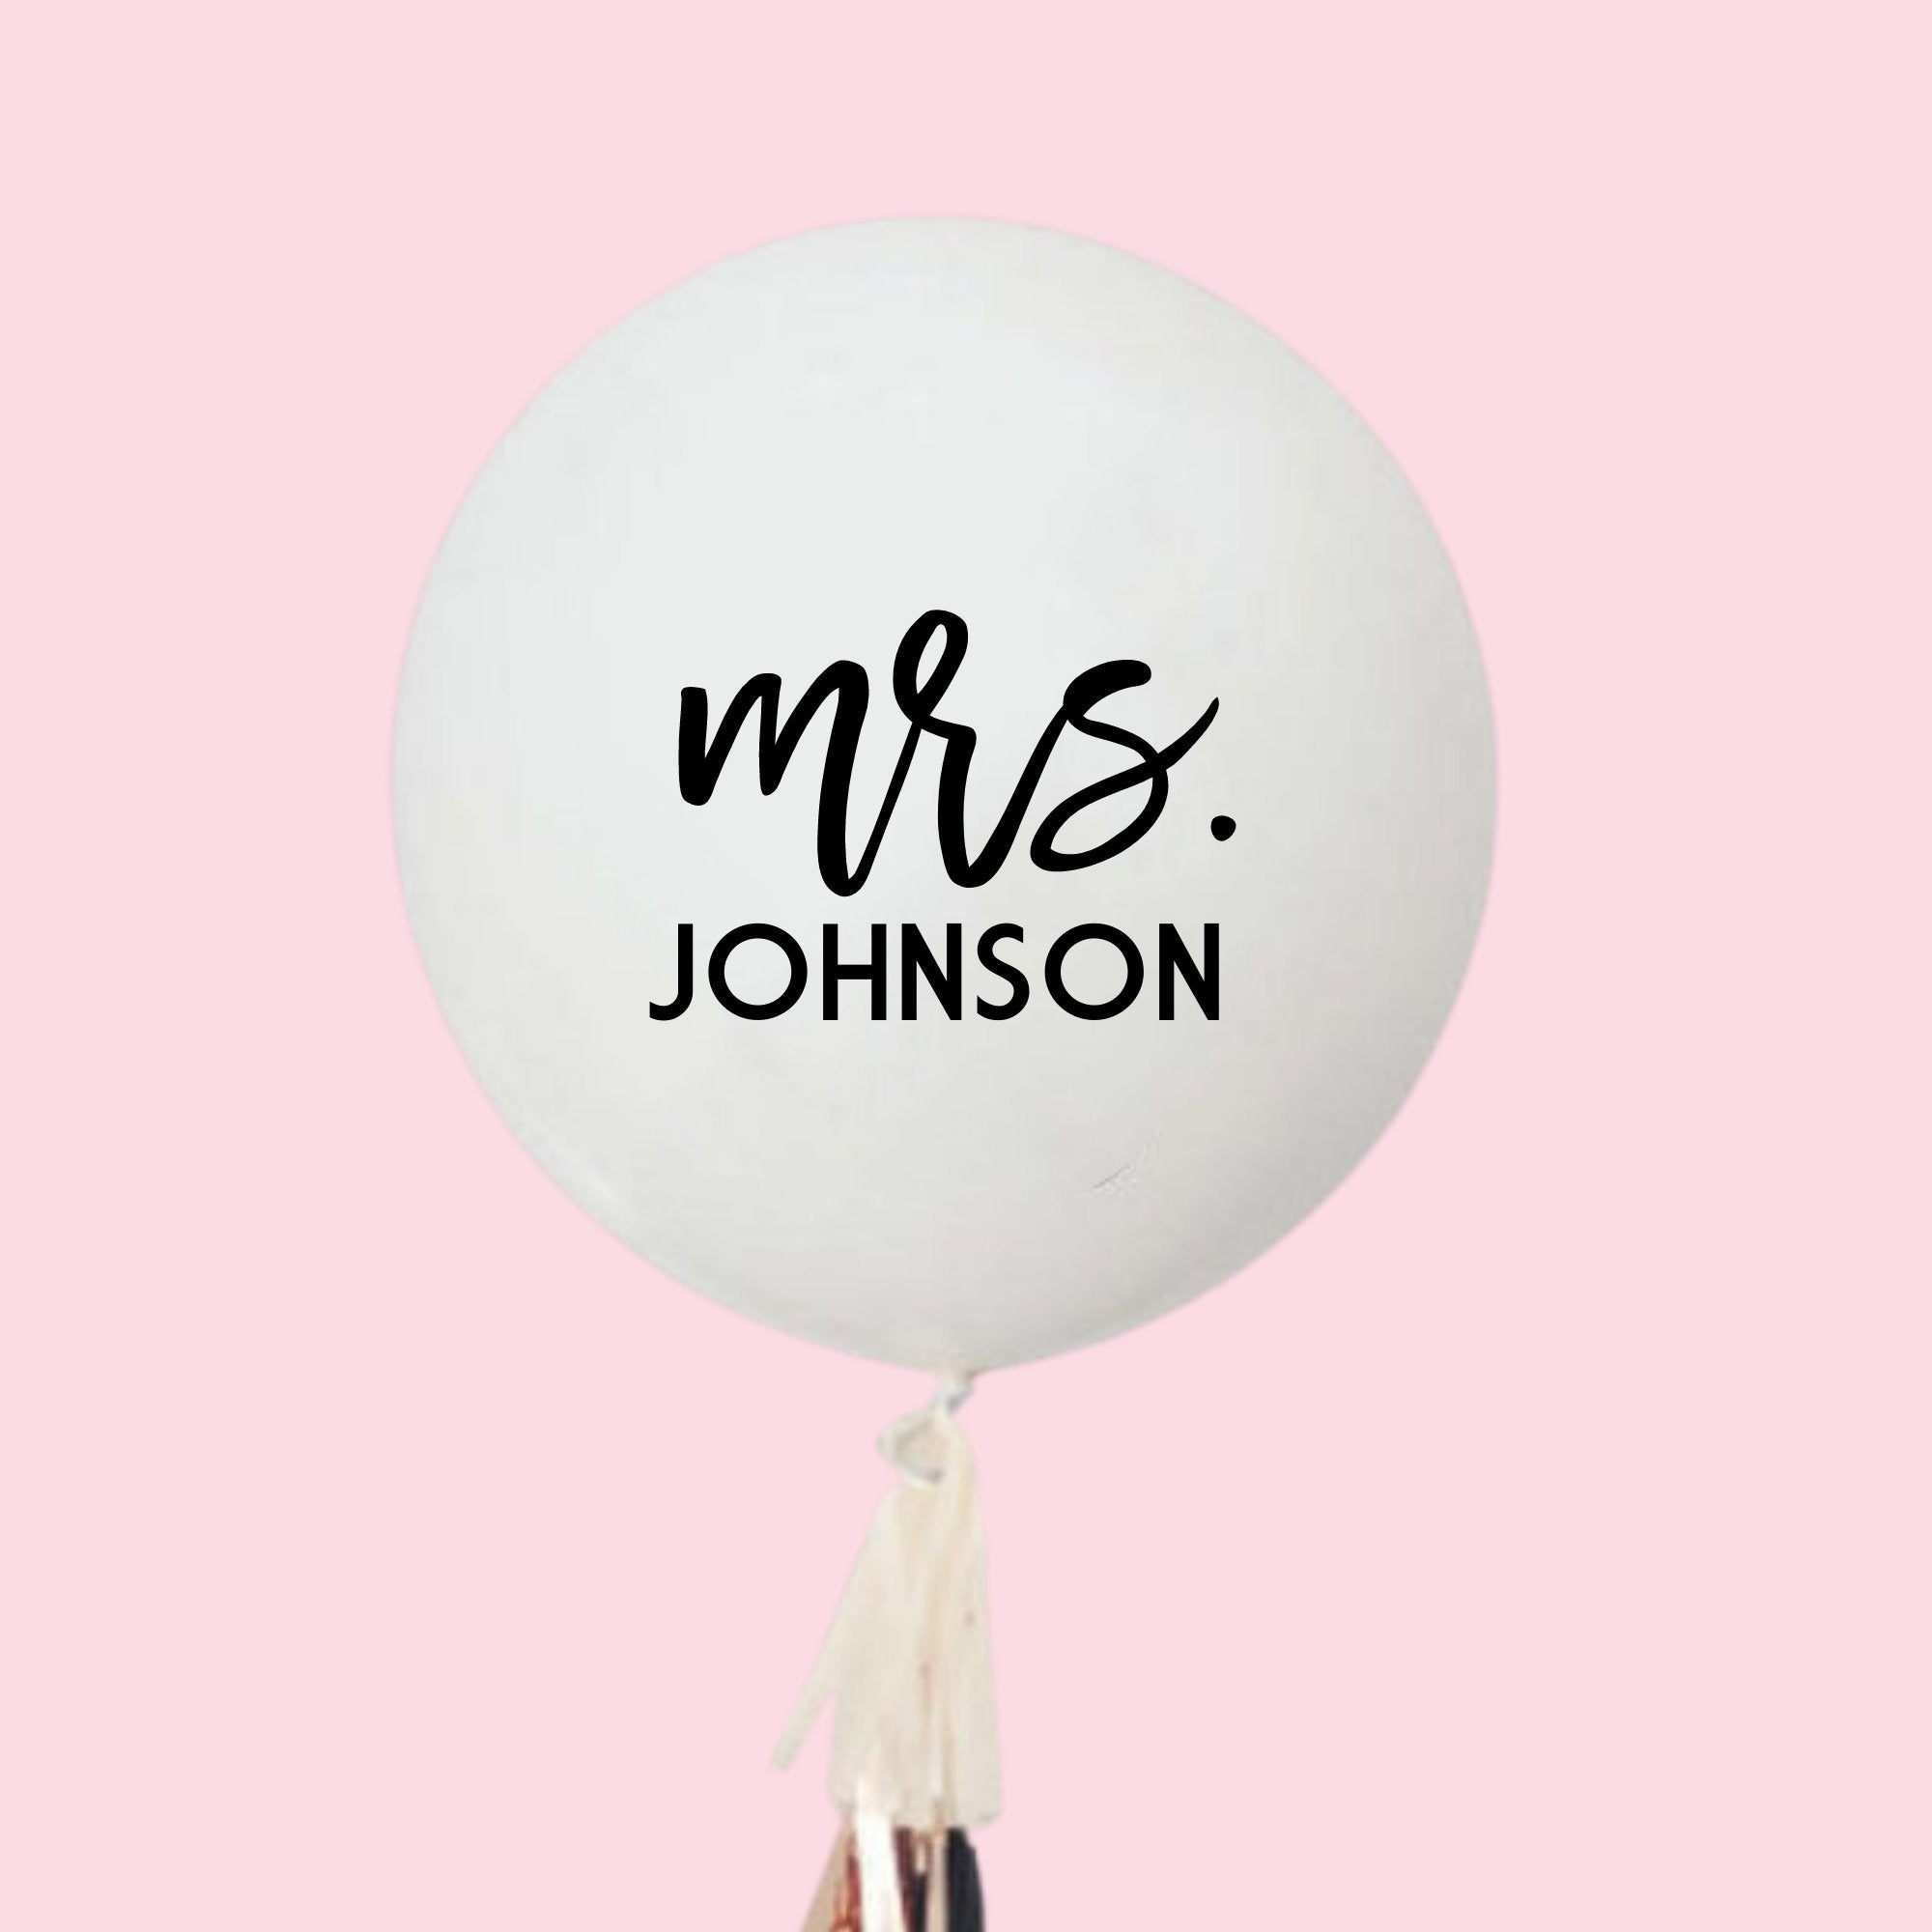 A white jumbo balloon reads "Mrs. Johnson"